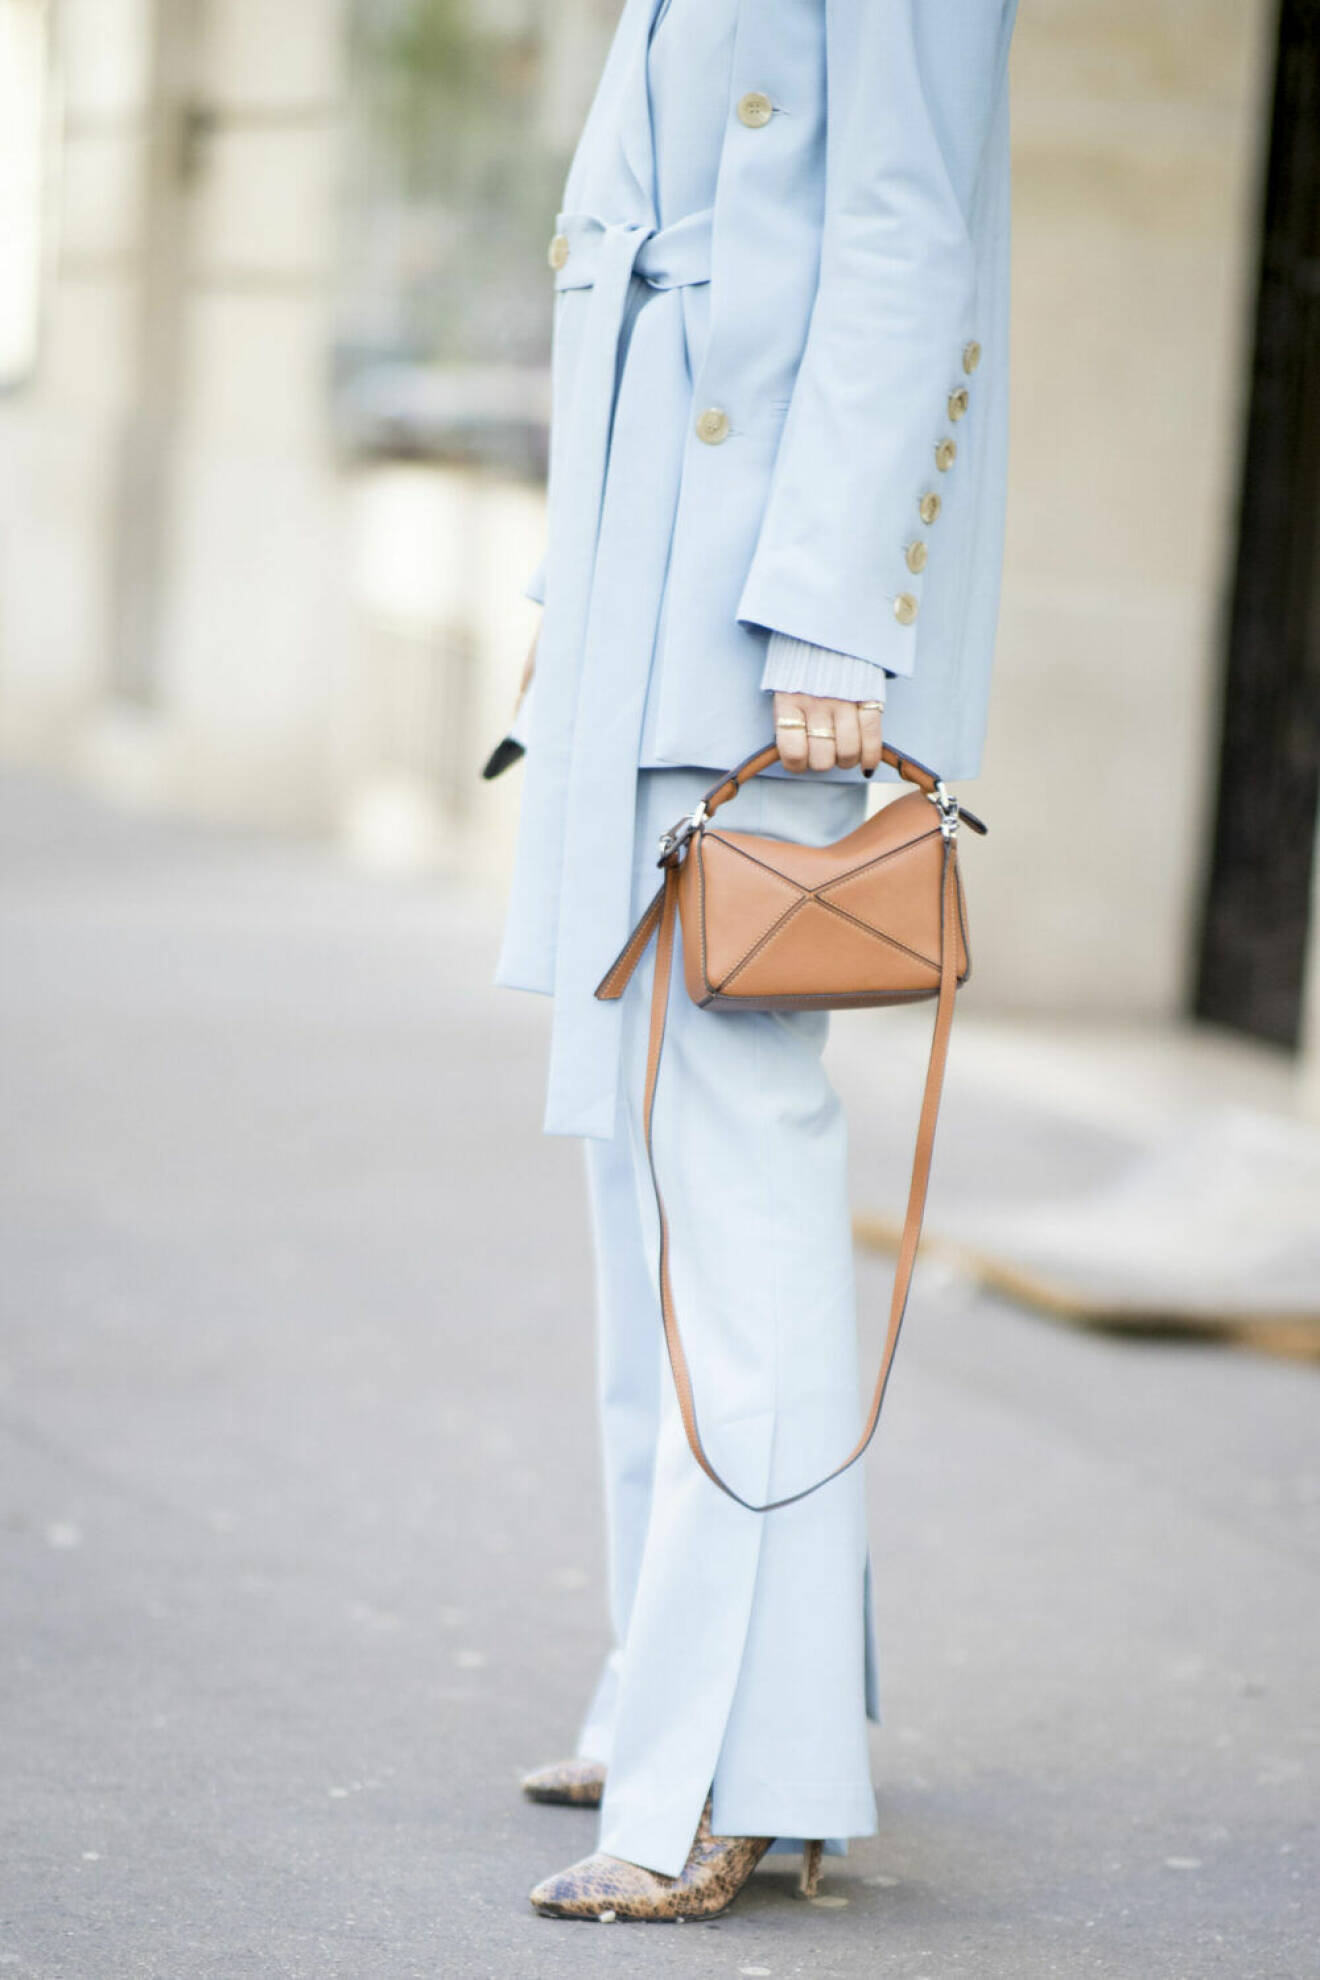 Streetstyle Paris FW, ljusblå kostym och väska från Loewe.